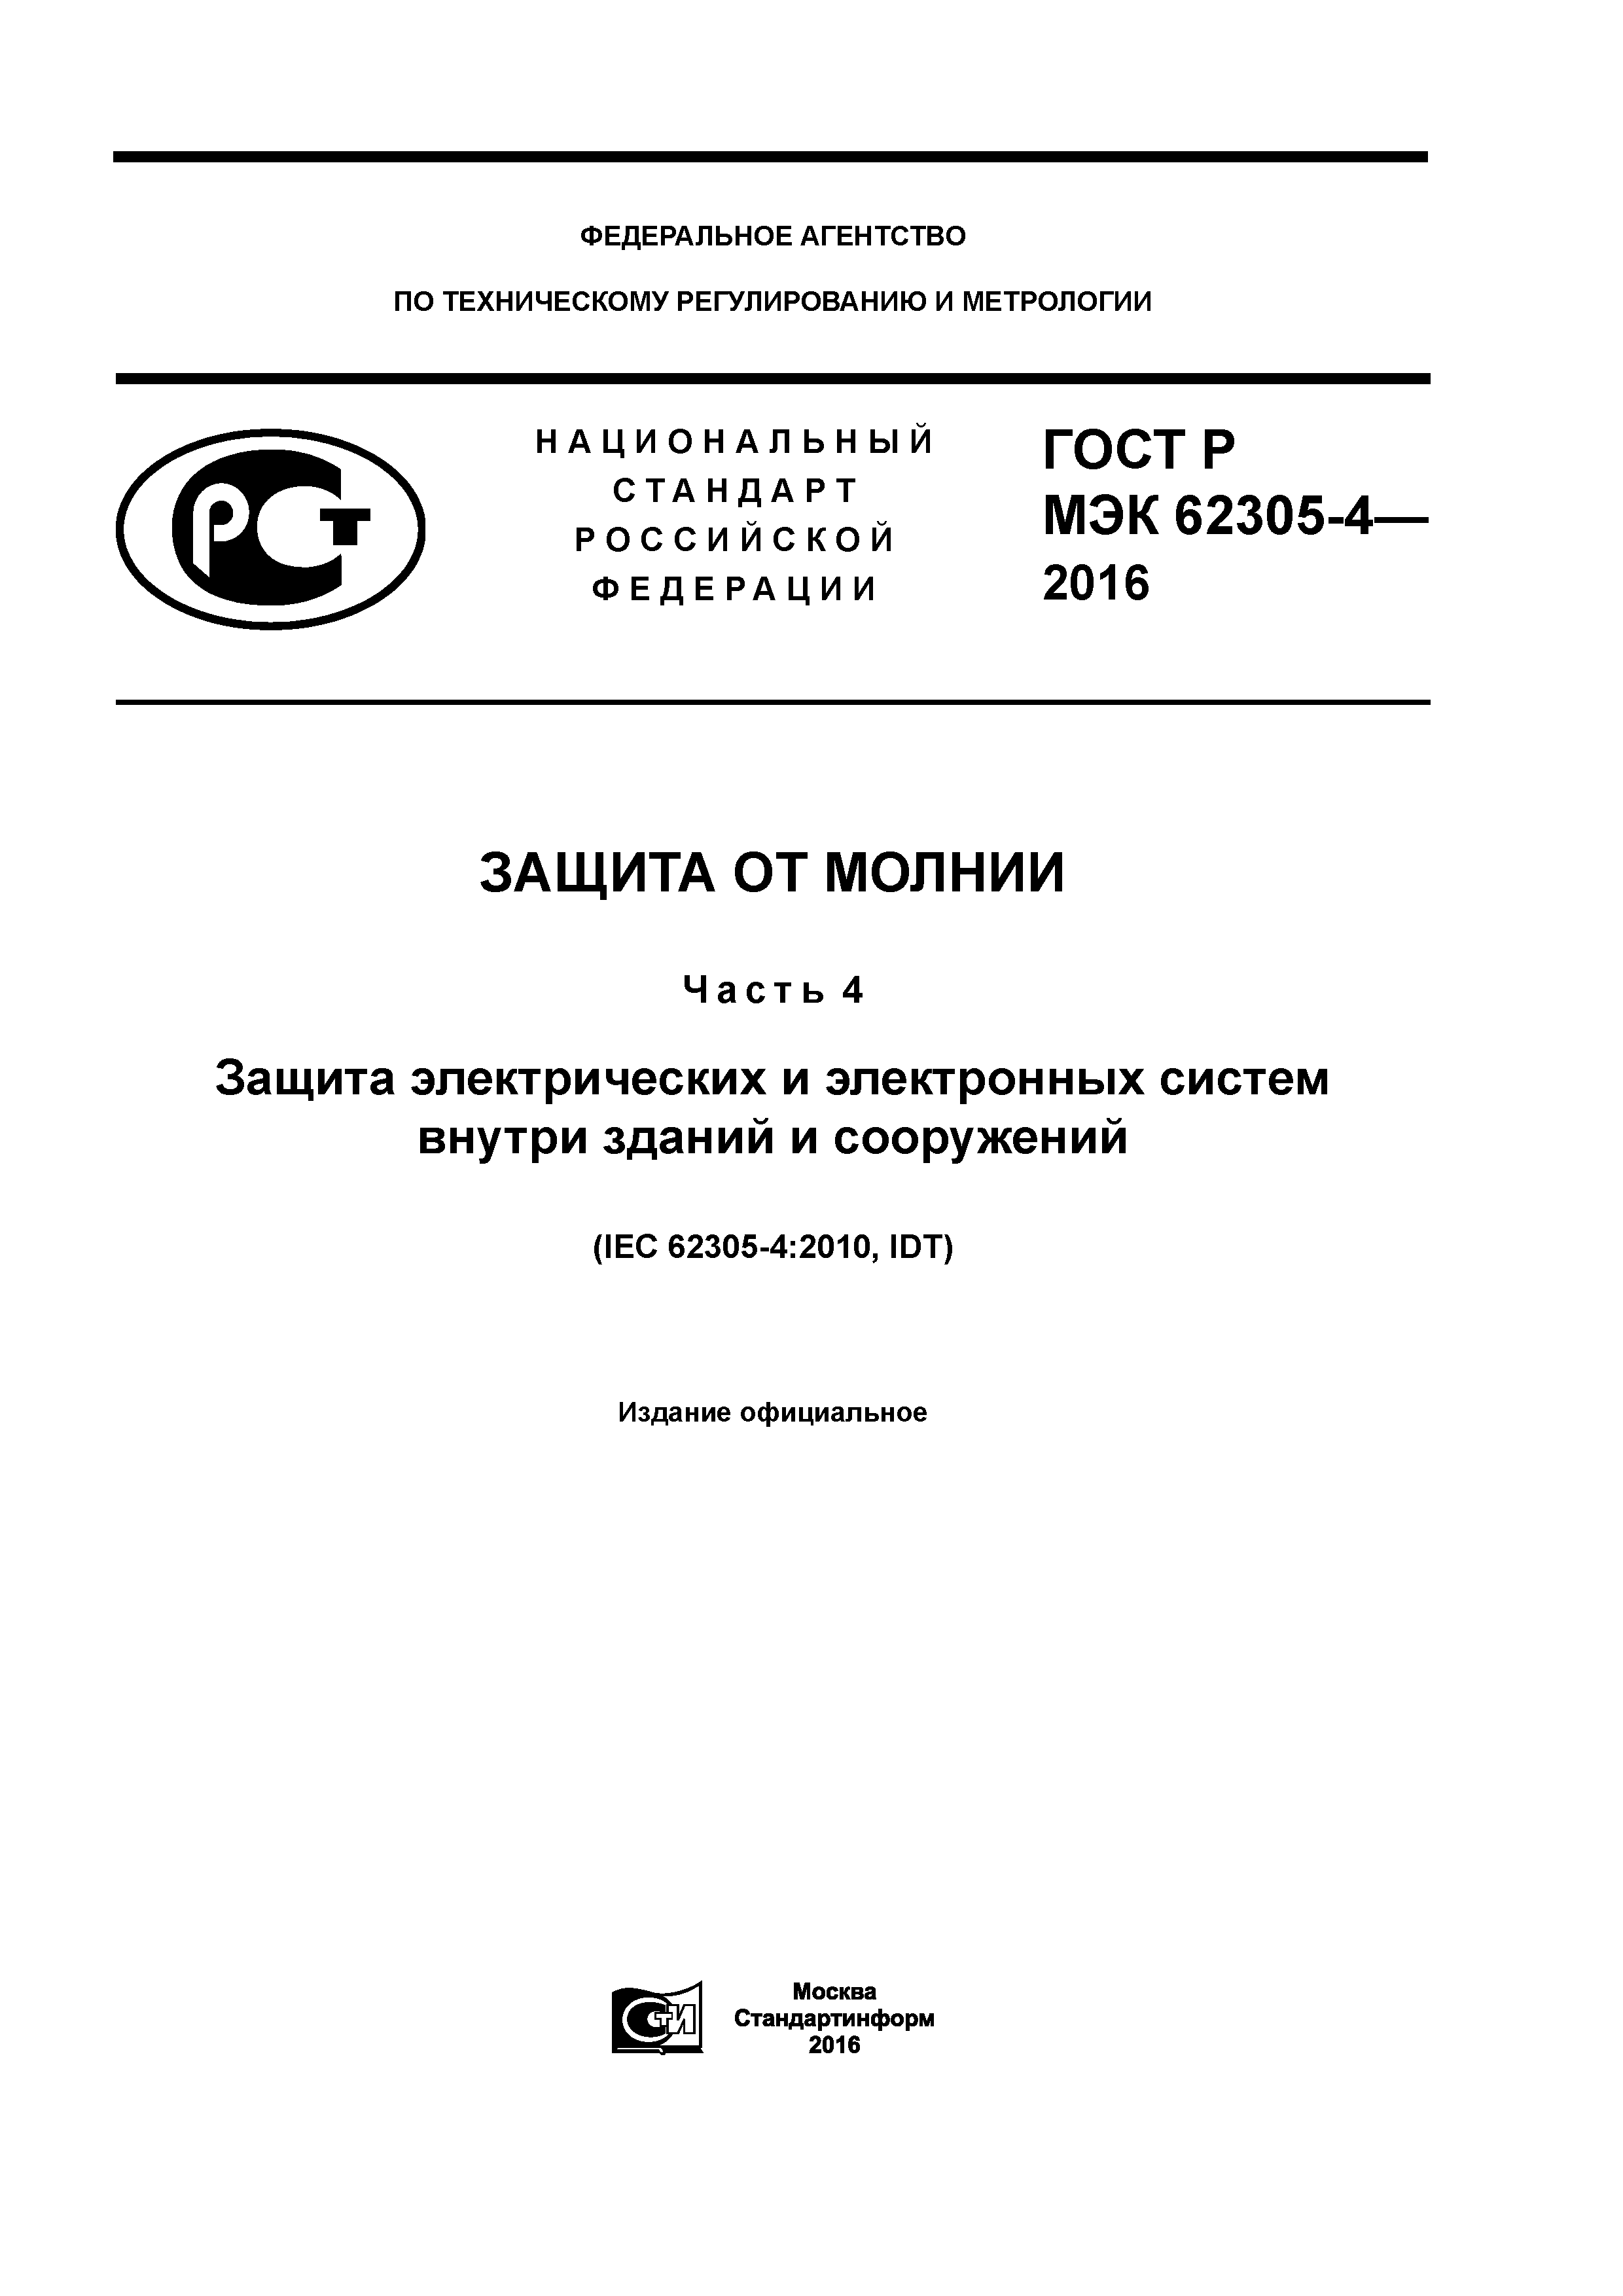 ГОСТ Р МЭК 62305-4-2016